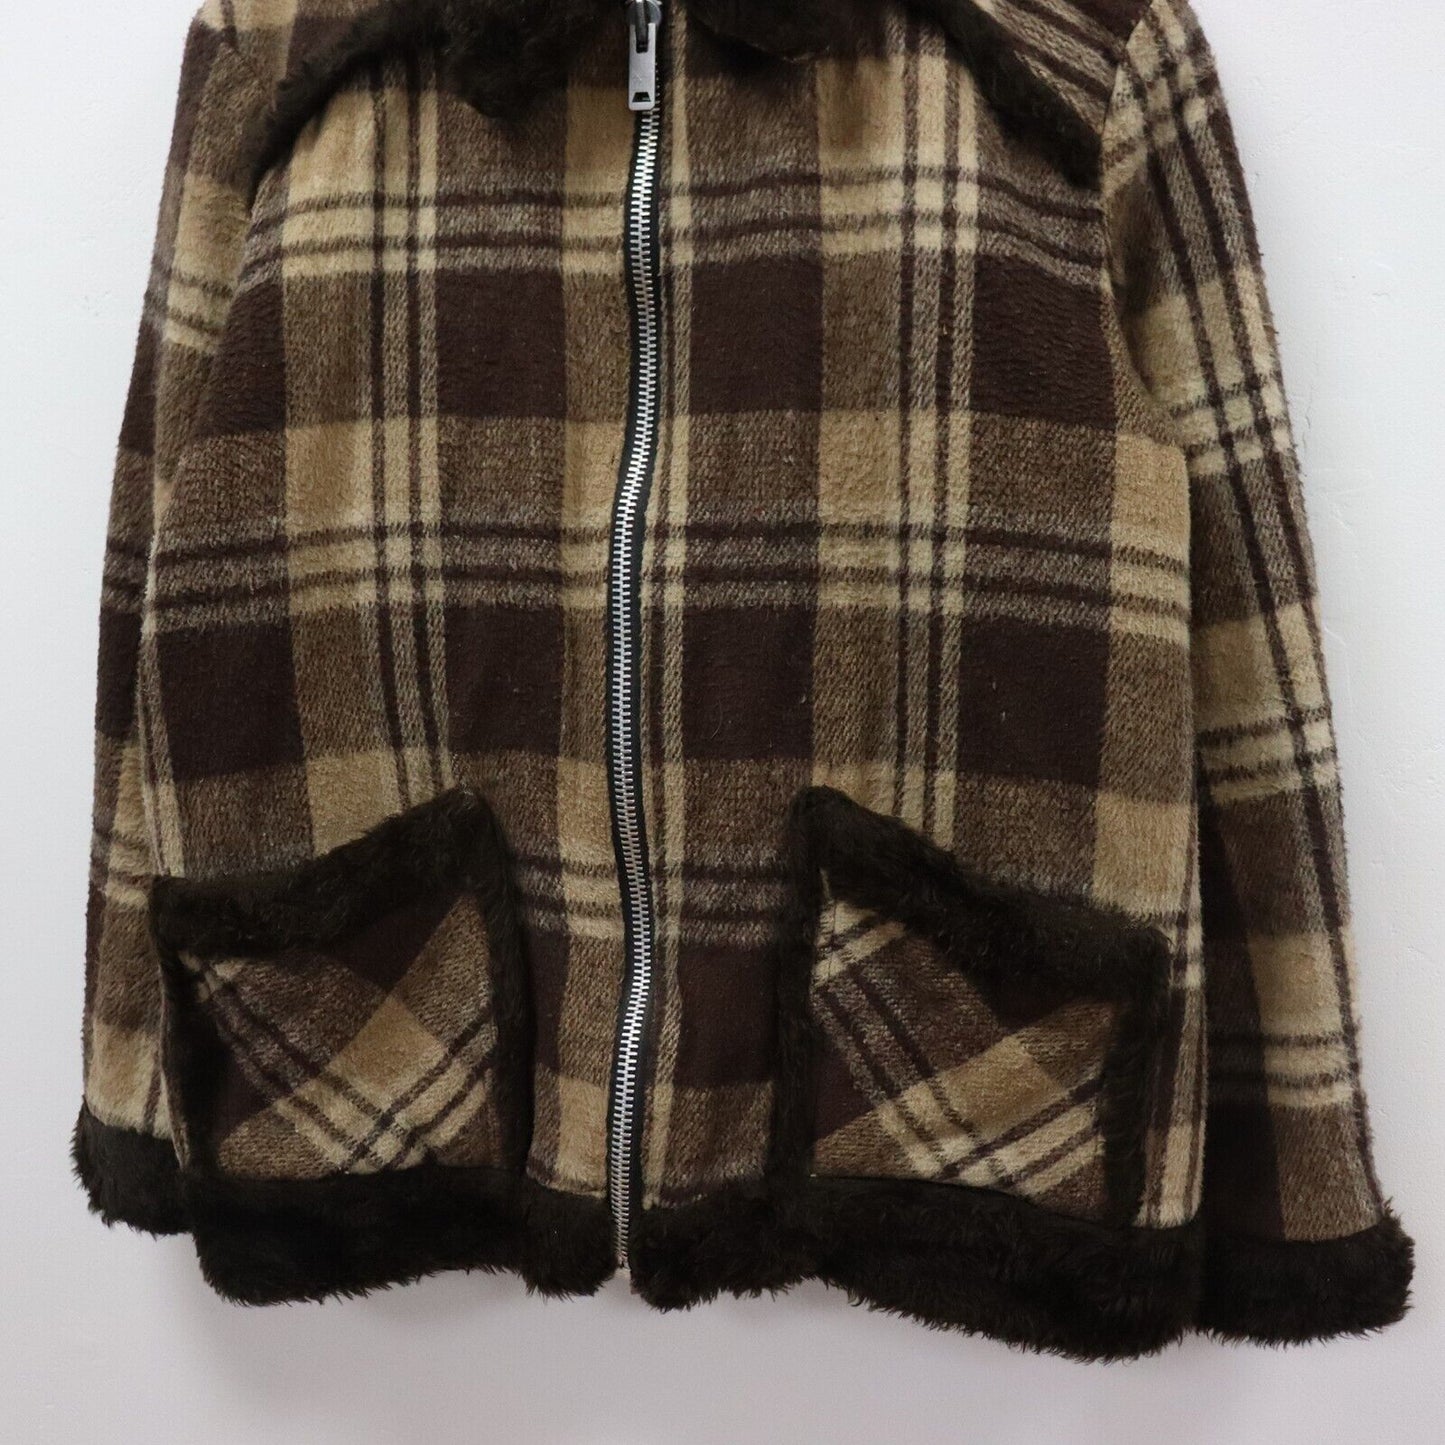 60s Wool Blend Jacket Size L